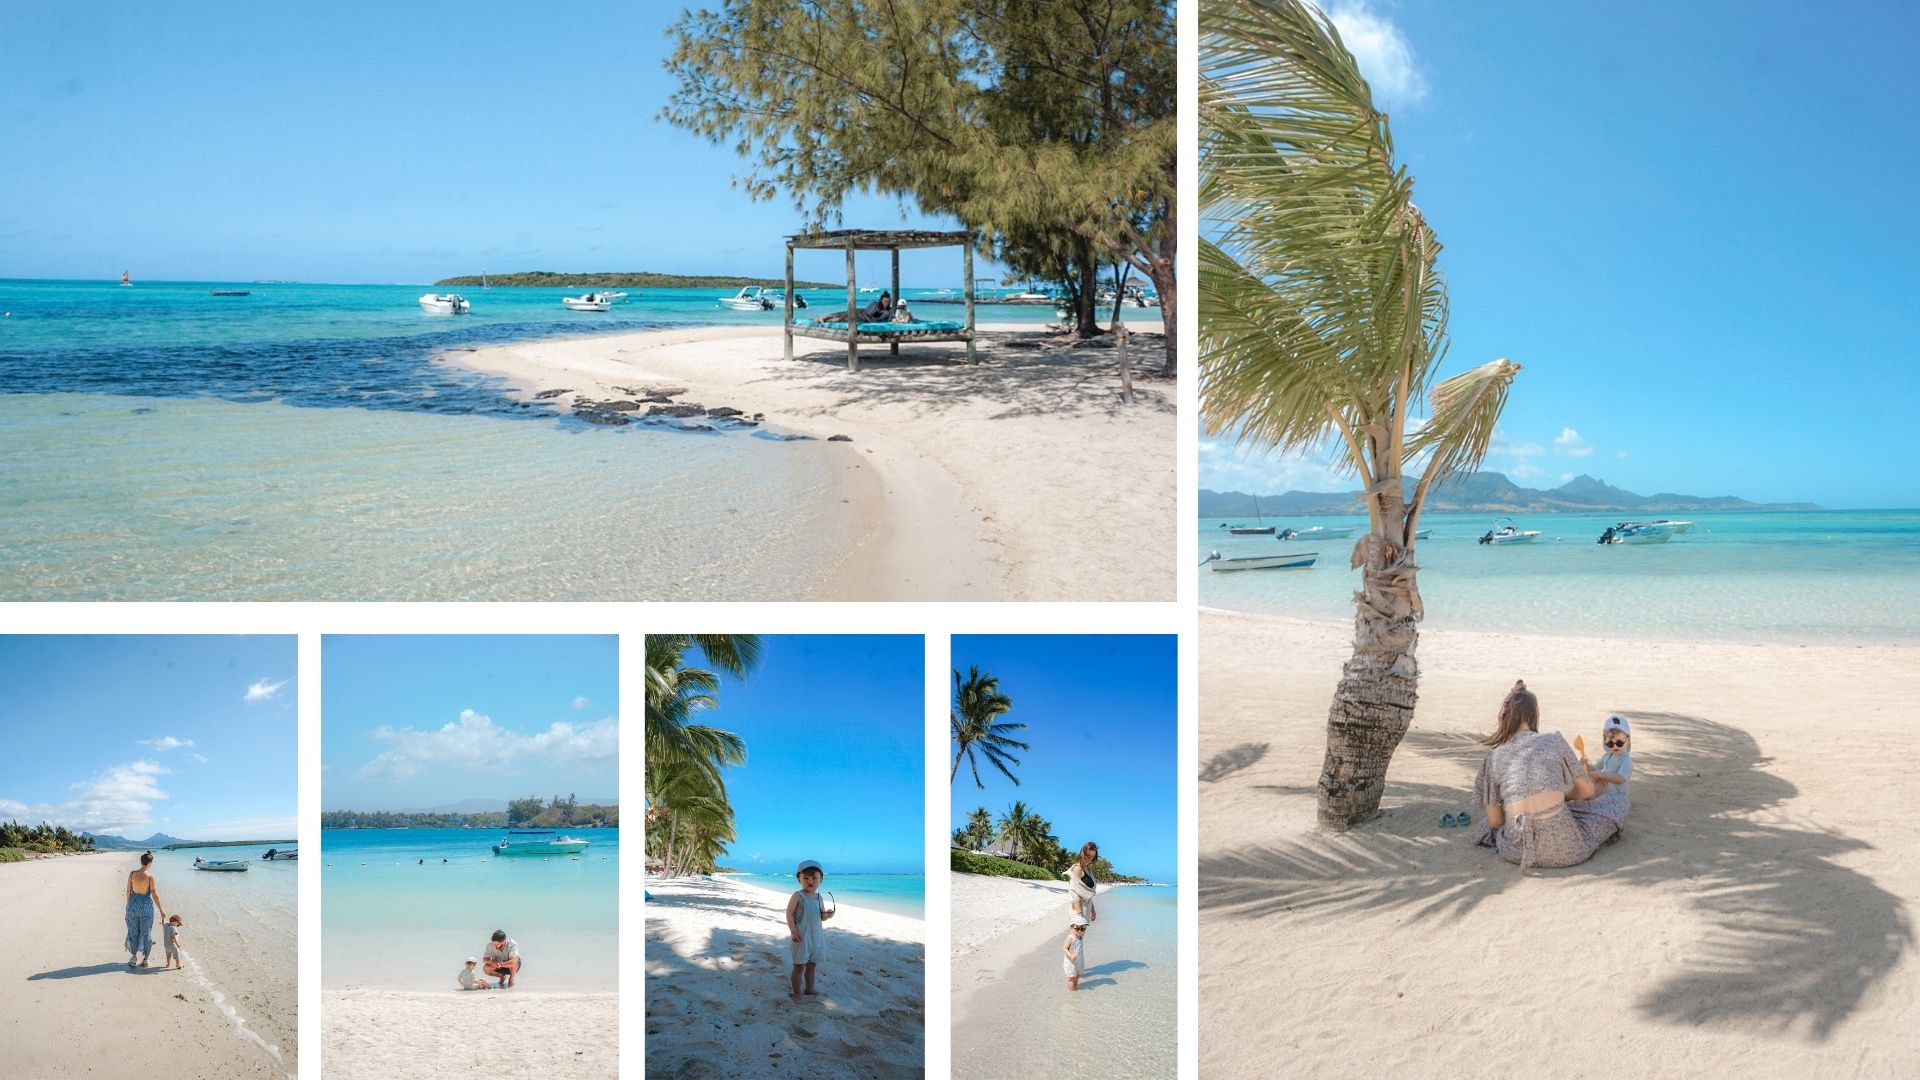 plus belles plages îles maurice blog